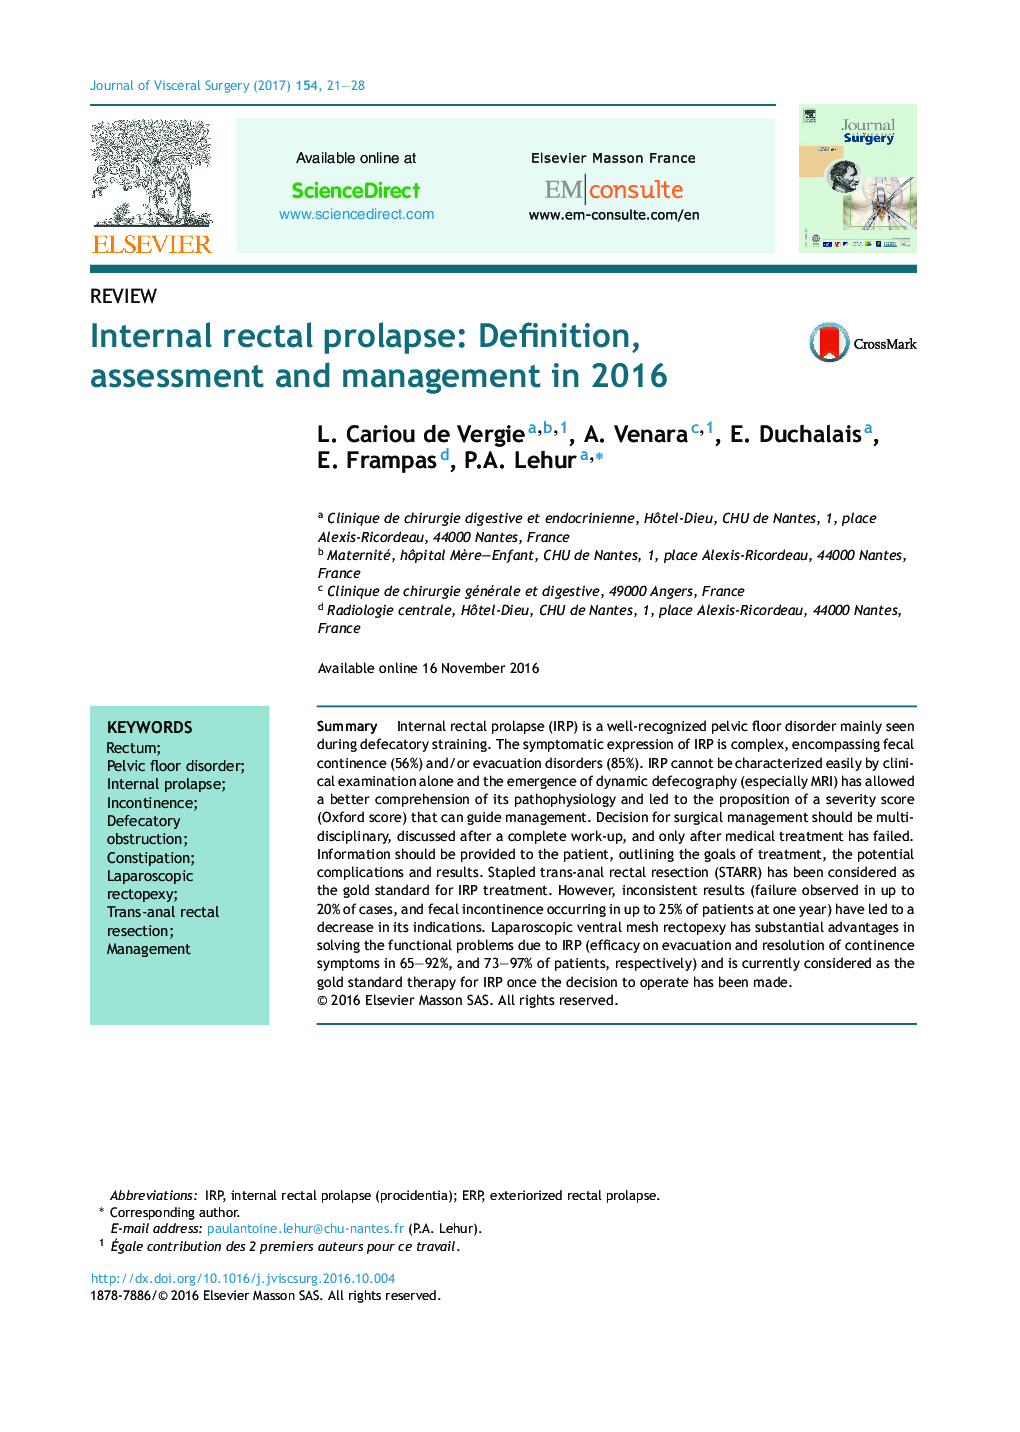 پرولاپس داخلی رکتال: تعریف، ارزیابی و مدیریت در سال 2016 